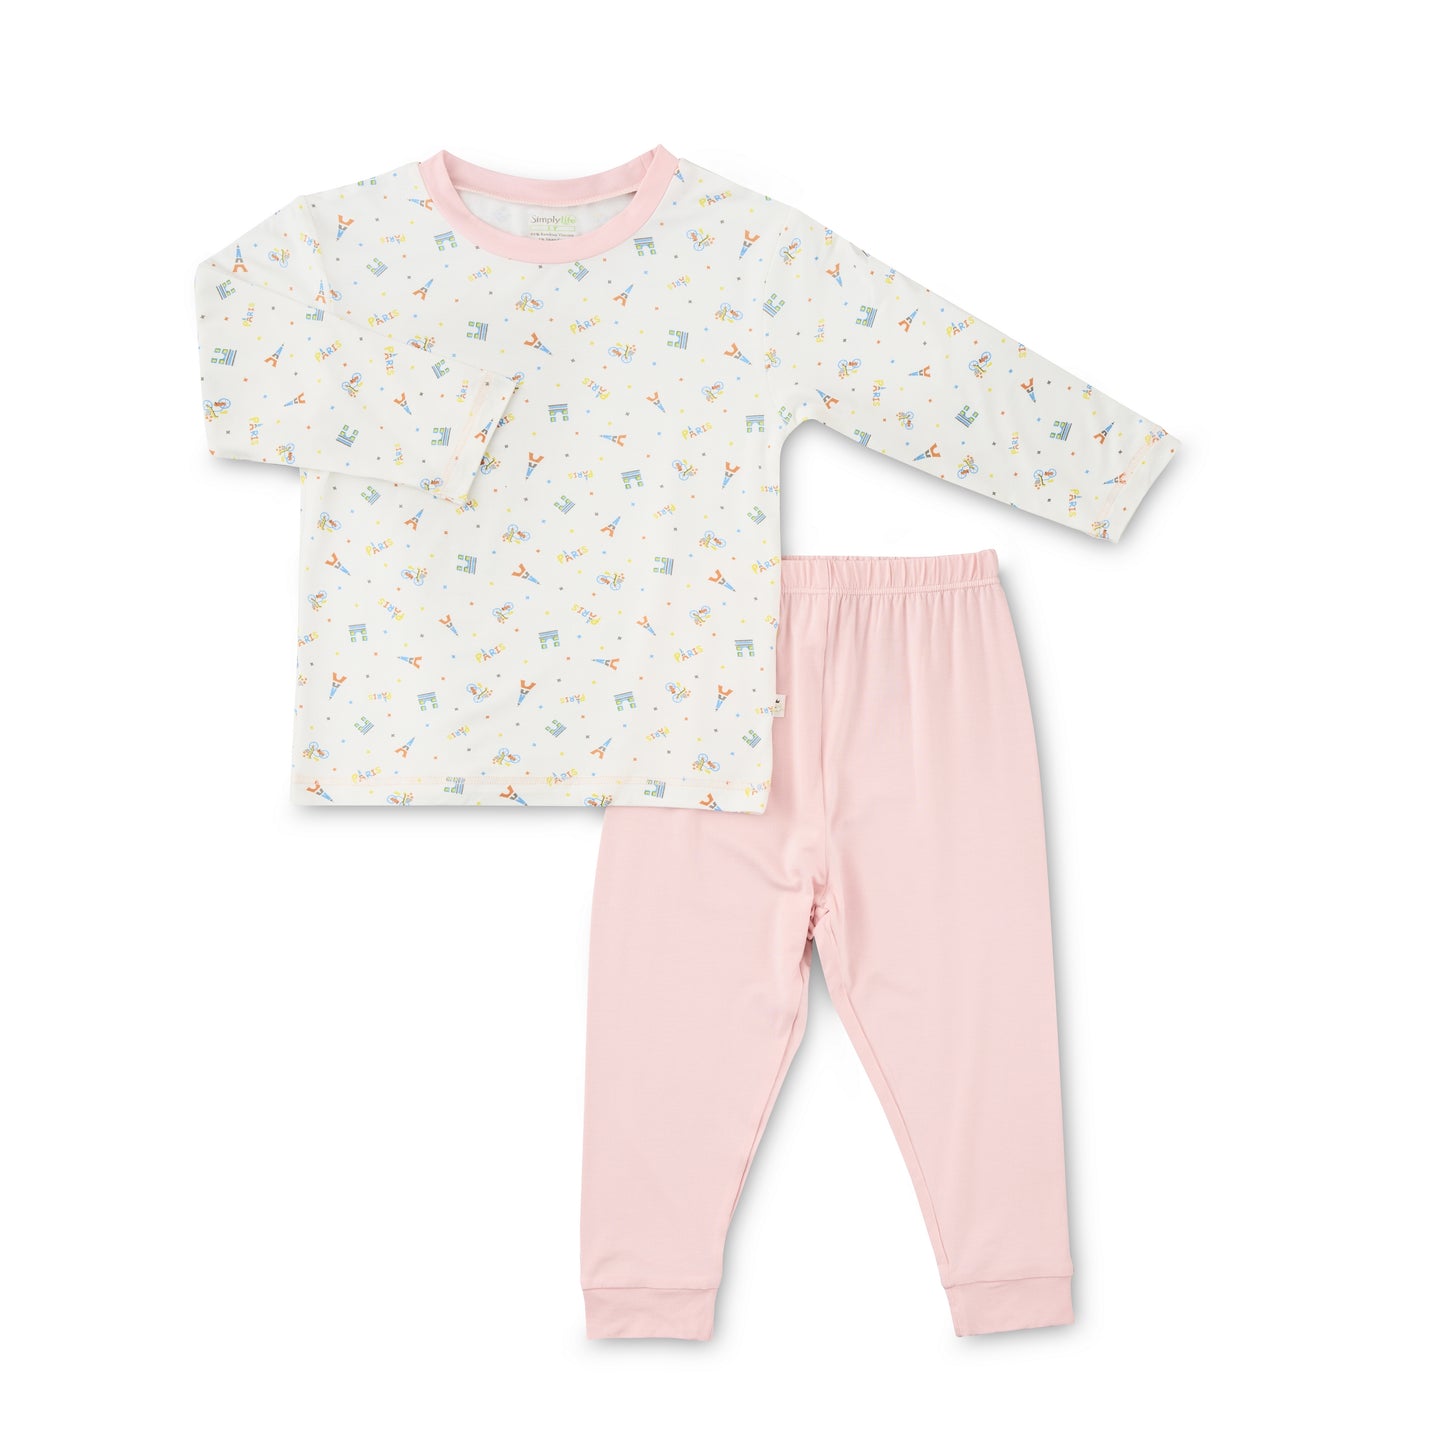 Paris - Long Sleeve Bamboo Pyjamas Set (Pink Pants)